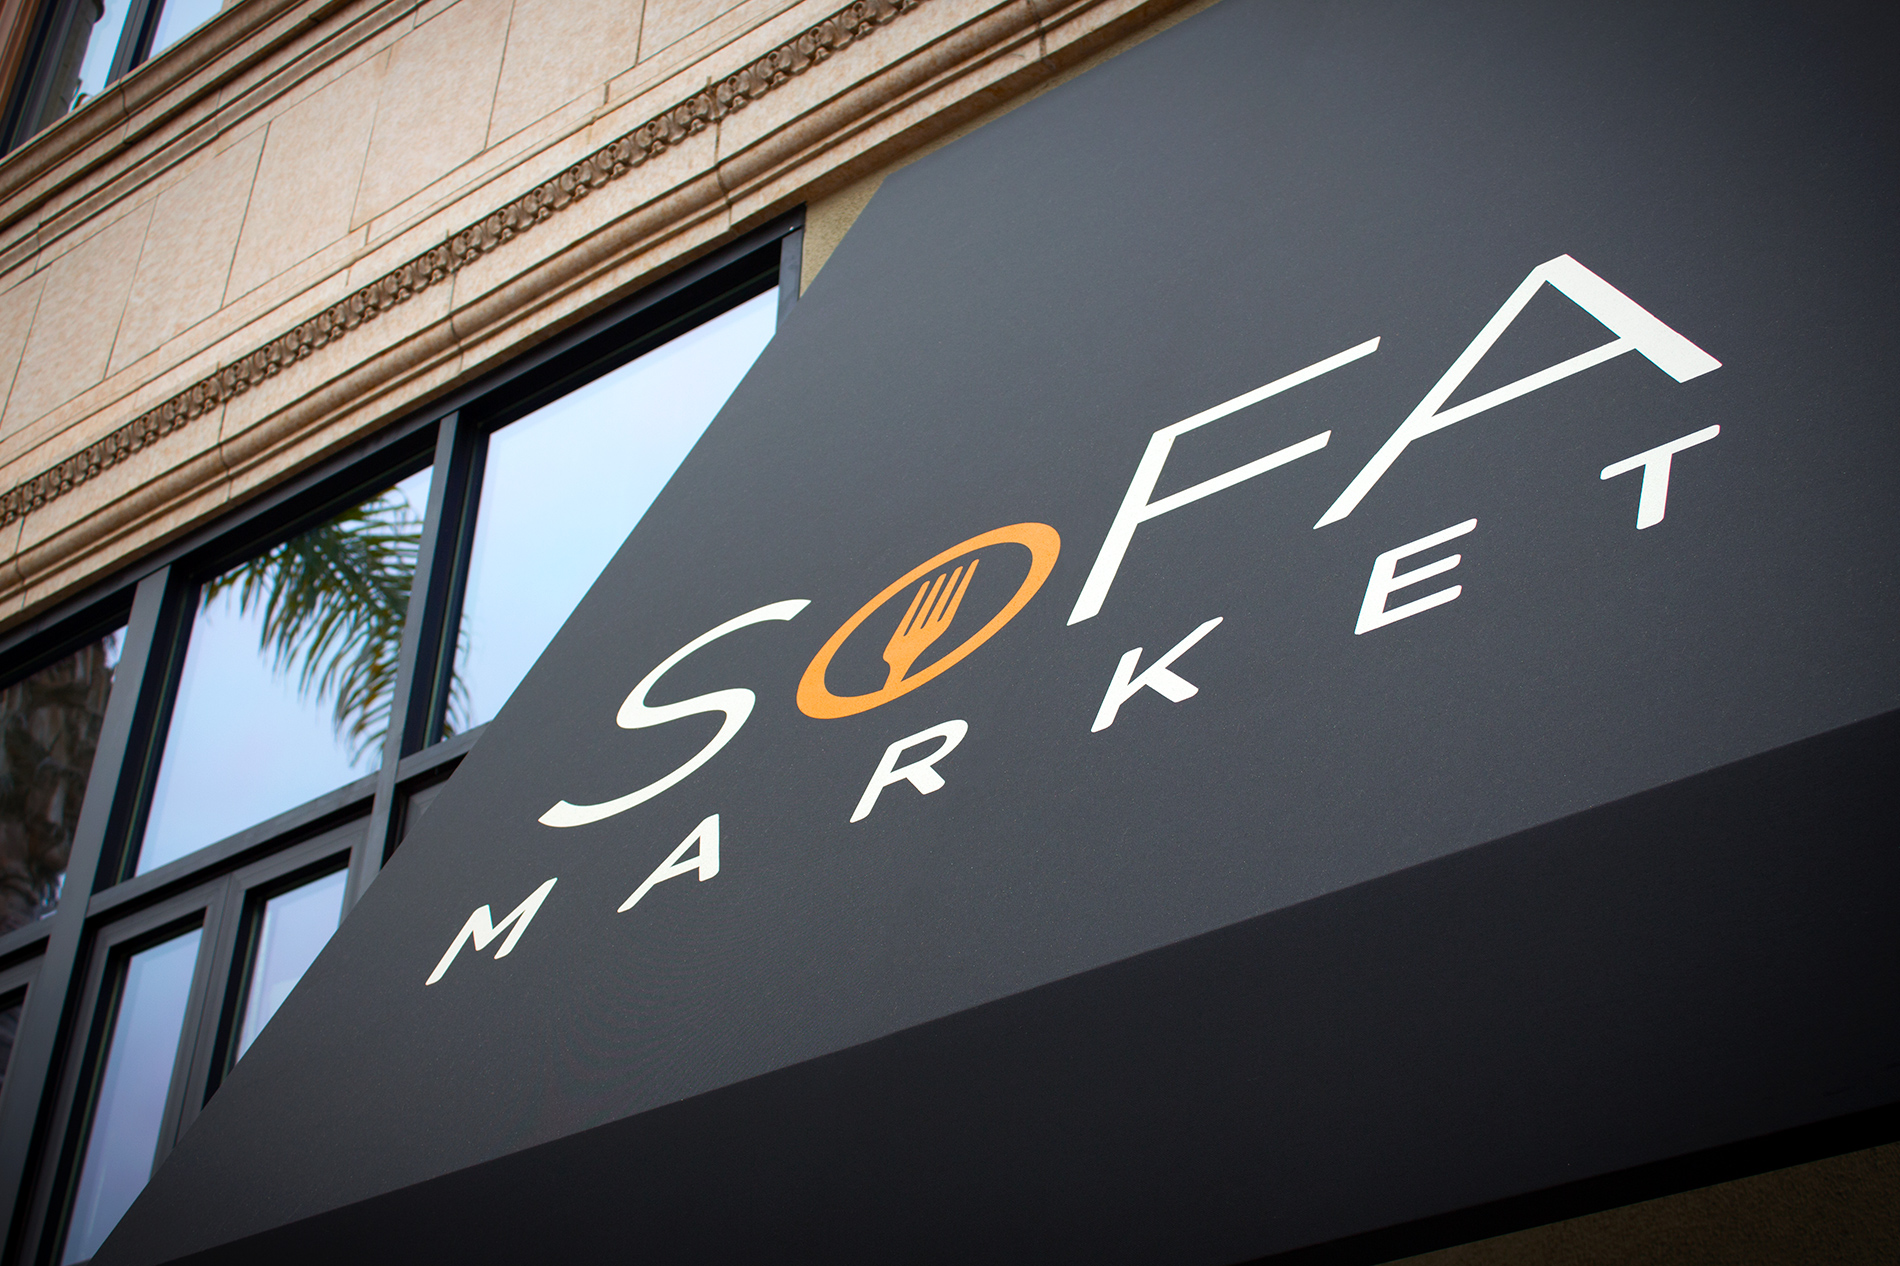 SoFA Market Logo